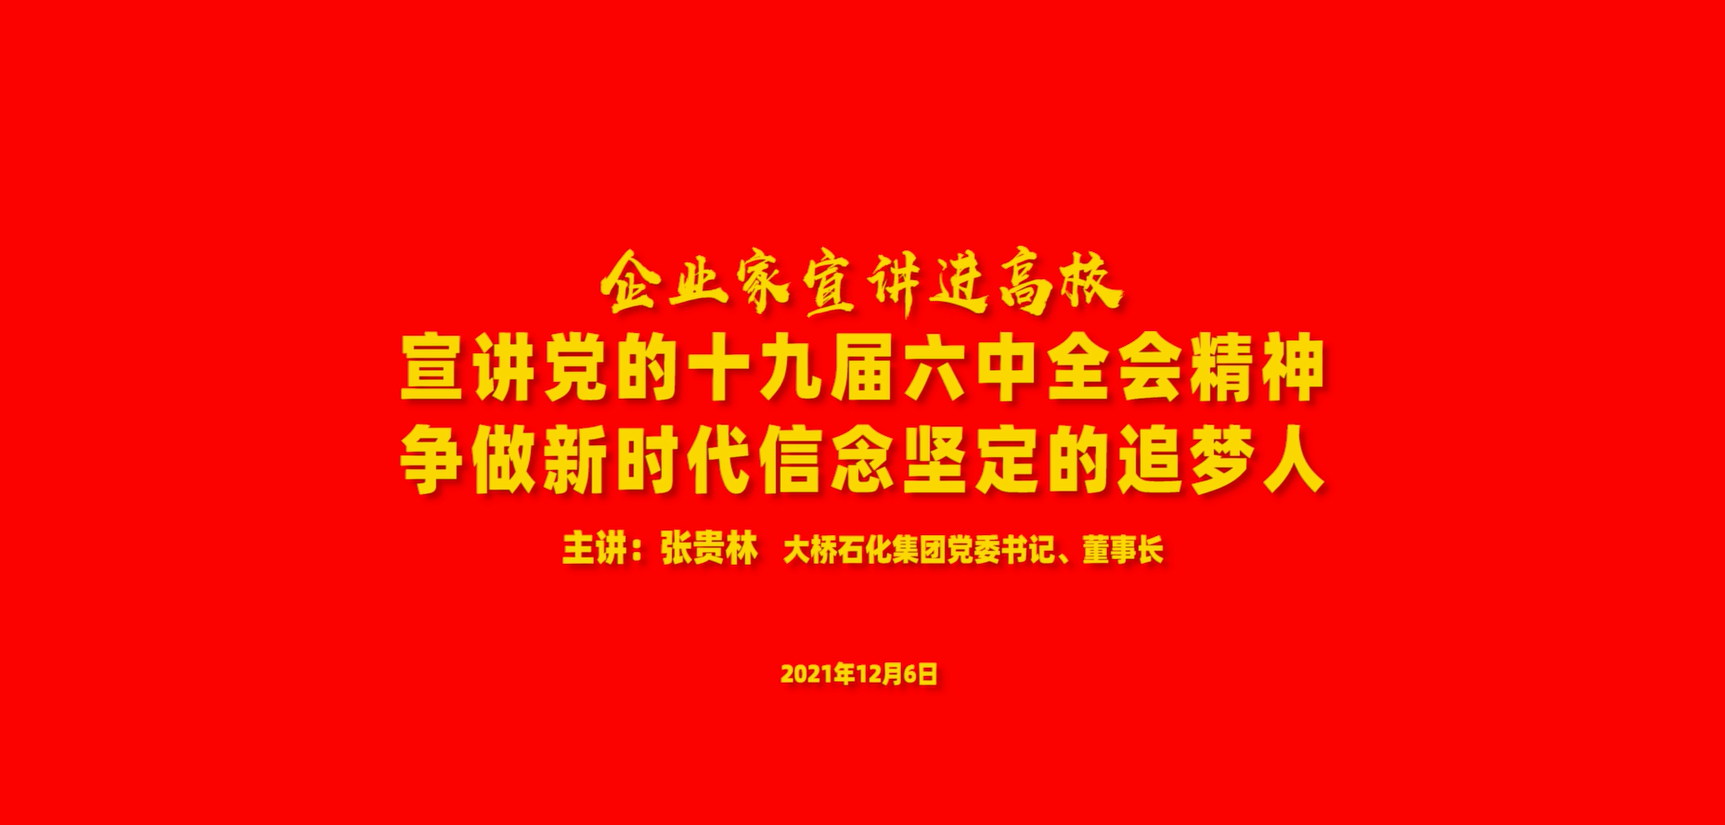 集团公司党委书记张贵林在新乡三全学院做专题党课